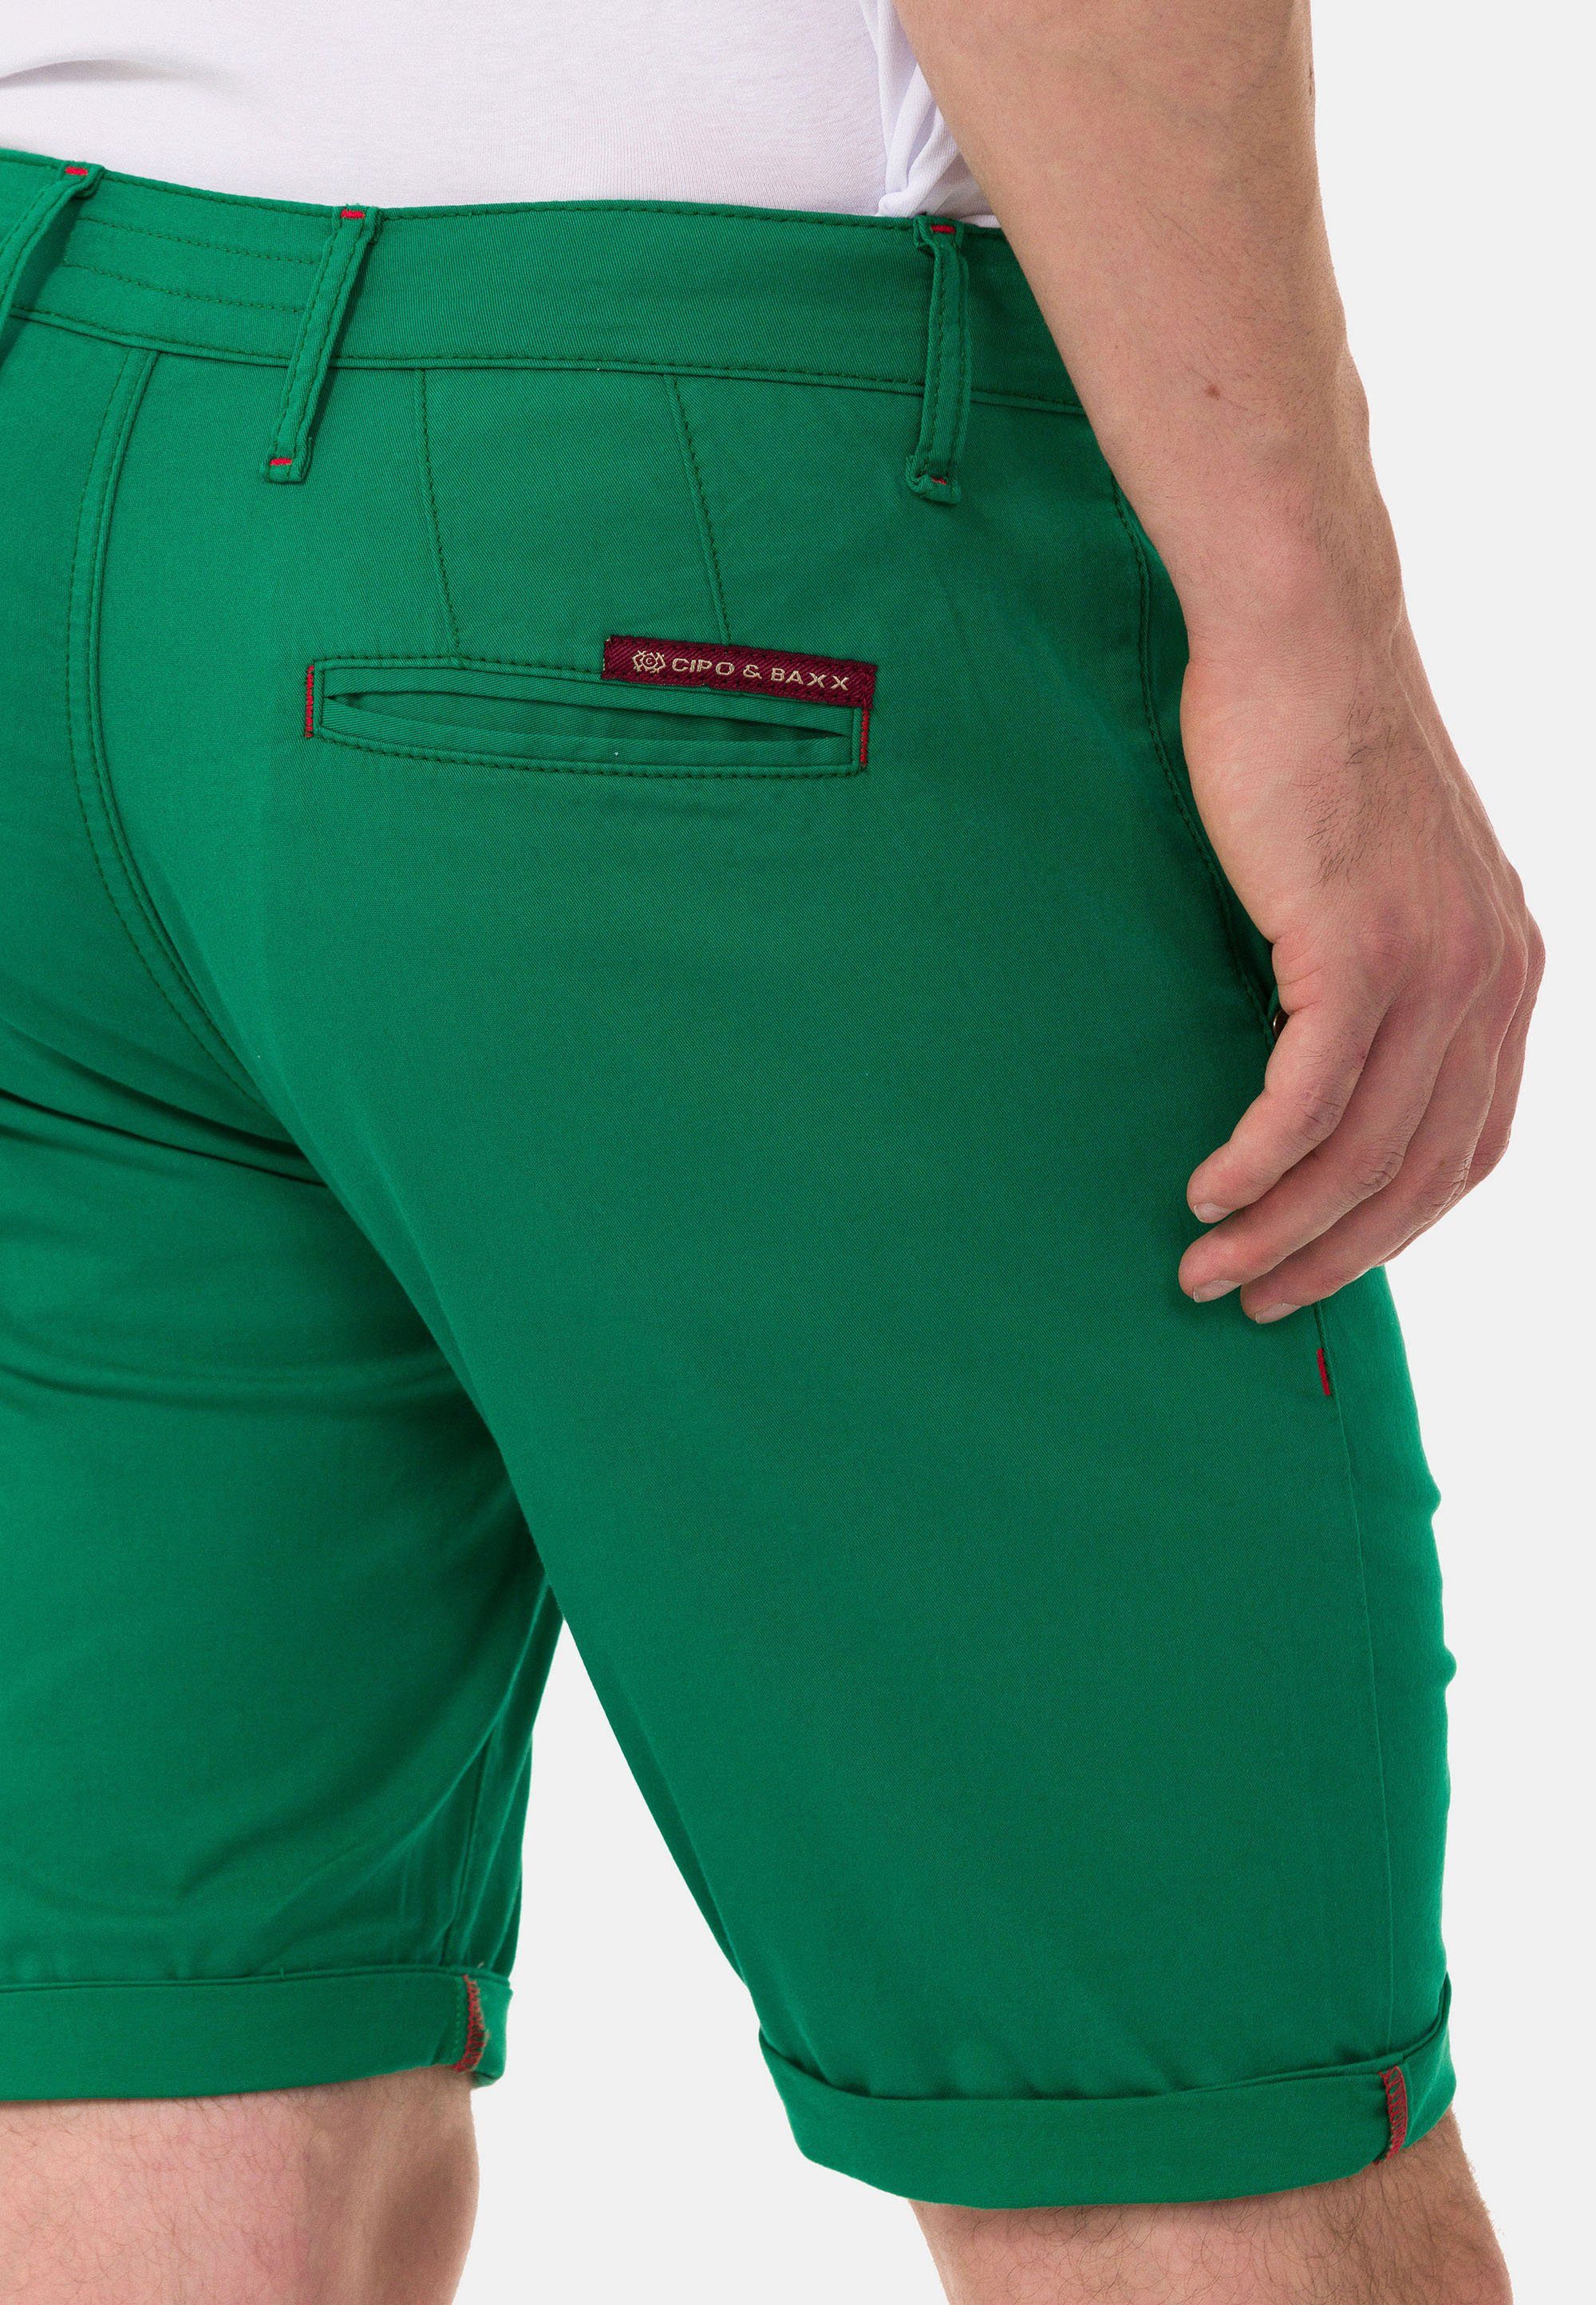 Baxx grün im einfarbigen Cipo Shorts & Look